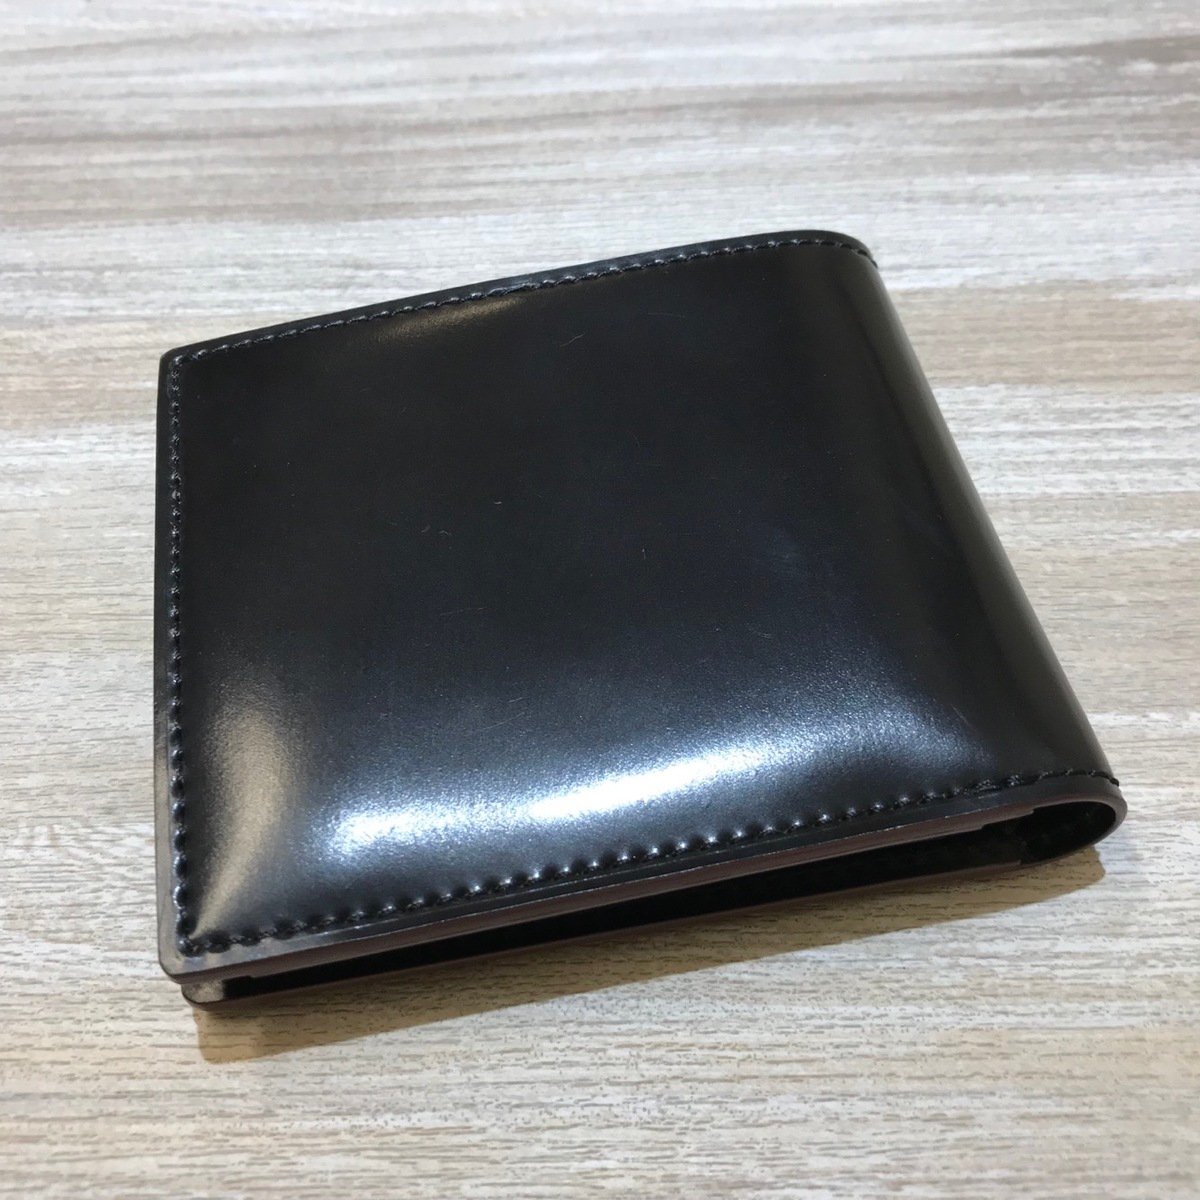 ガンゾの黒　0057128　シェルコードバン2　2つ折り財布の買取実績です。